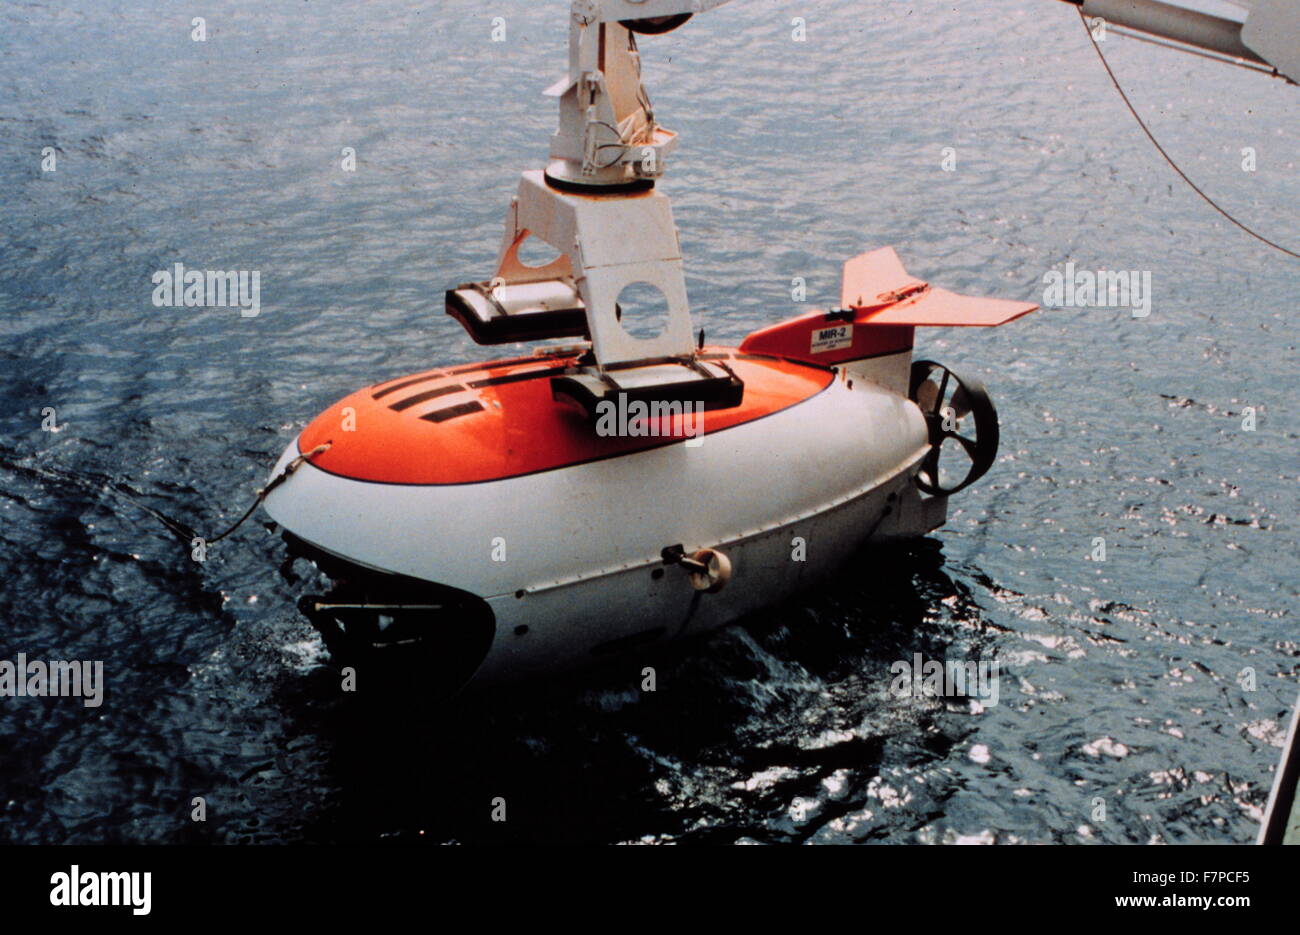 MIR sommergibile usato per filmare riprese subacquee che compaiono nel film "Titanic". 1997 Foto Stock